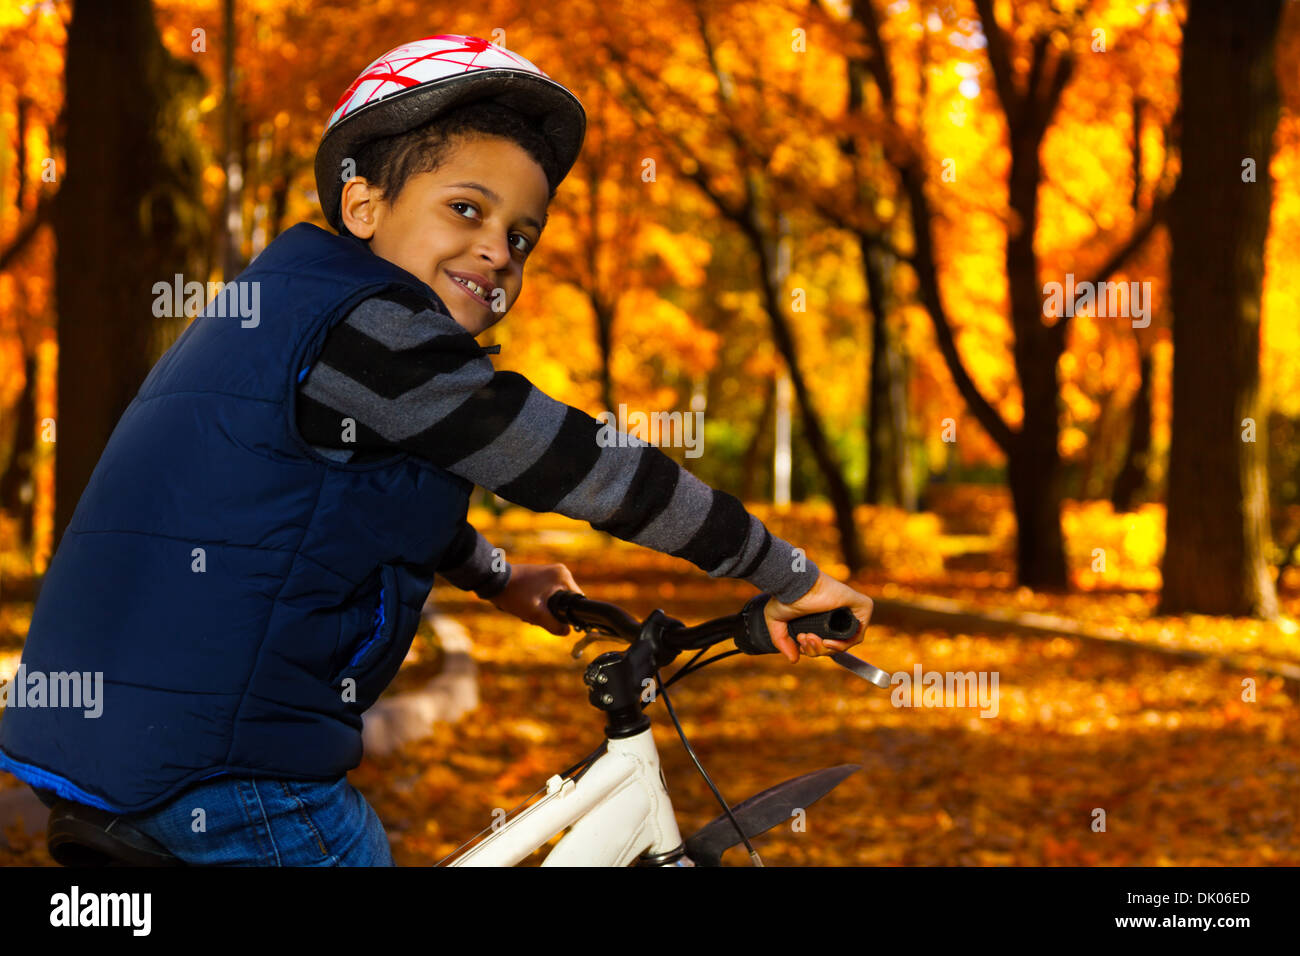 Negro Feliz Niño De 10 Años De Edad Andar En Bicicleta En El Parque Del  Otoño Con Su Hermanito Fotos, retratos, imágenes y fotografía de archivo  libres de derecho. Image 24472433